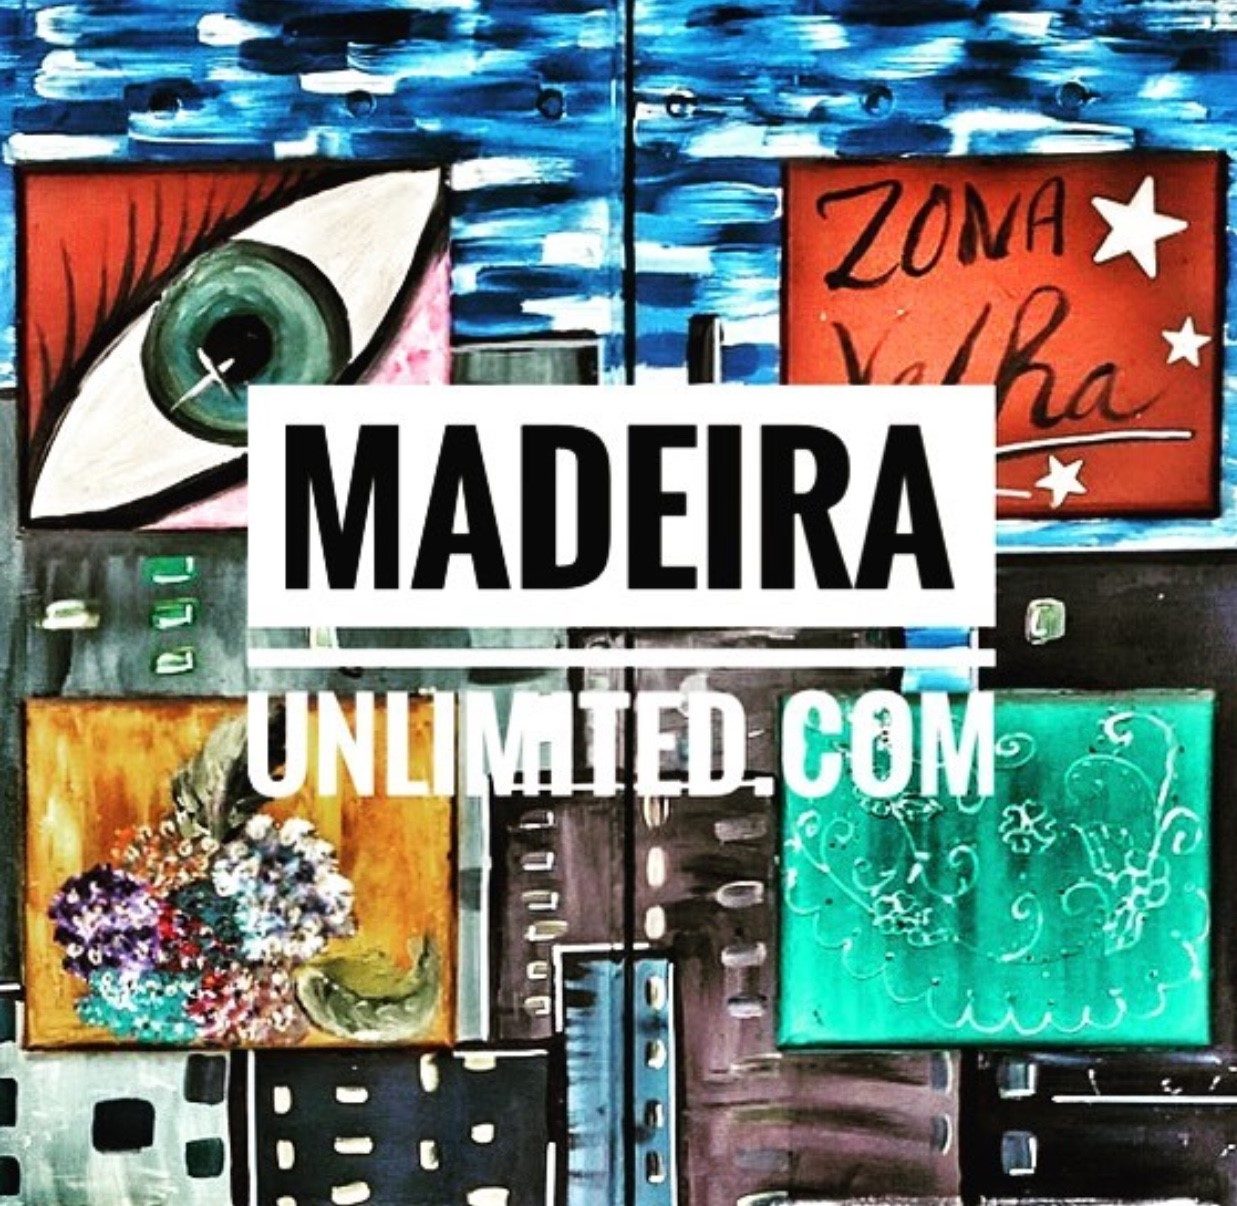 Madeira-Unlimited.com